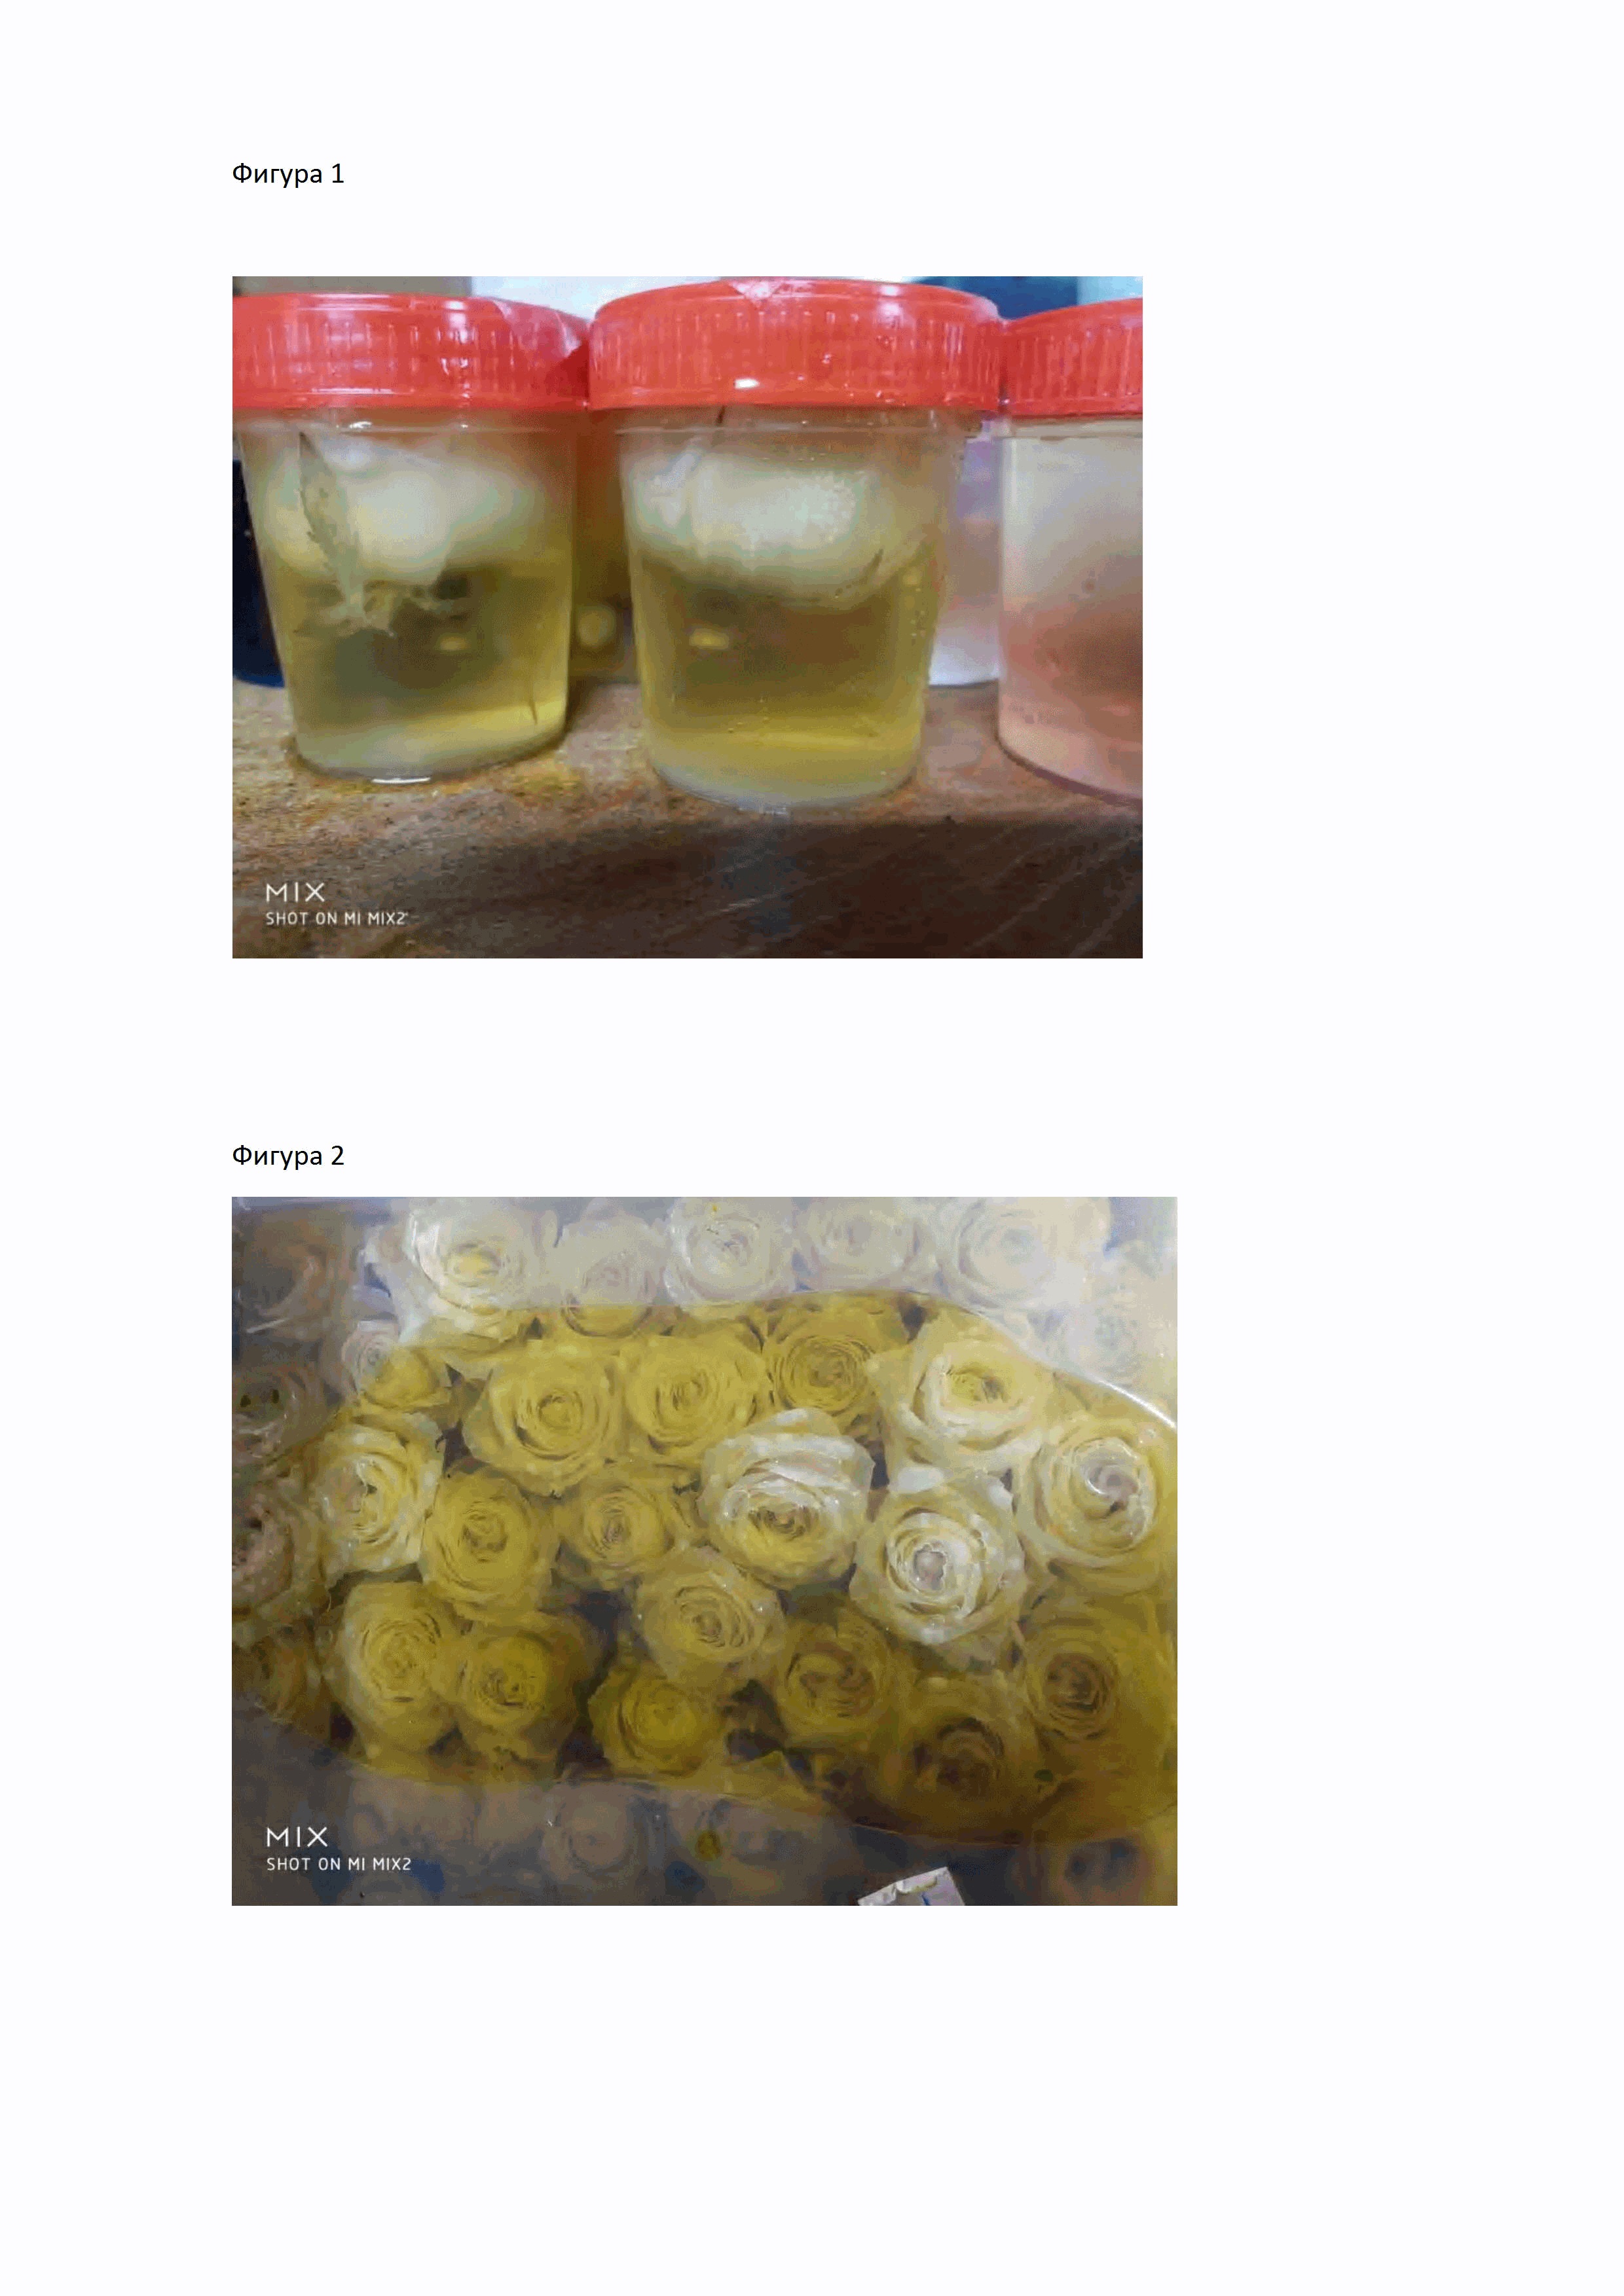 Метод консервации и/или окрашивания растительного материала, включая срезанные цветы